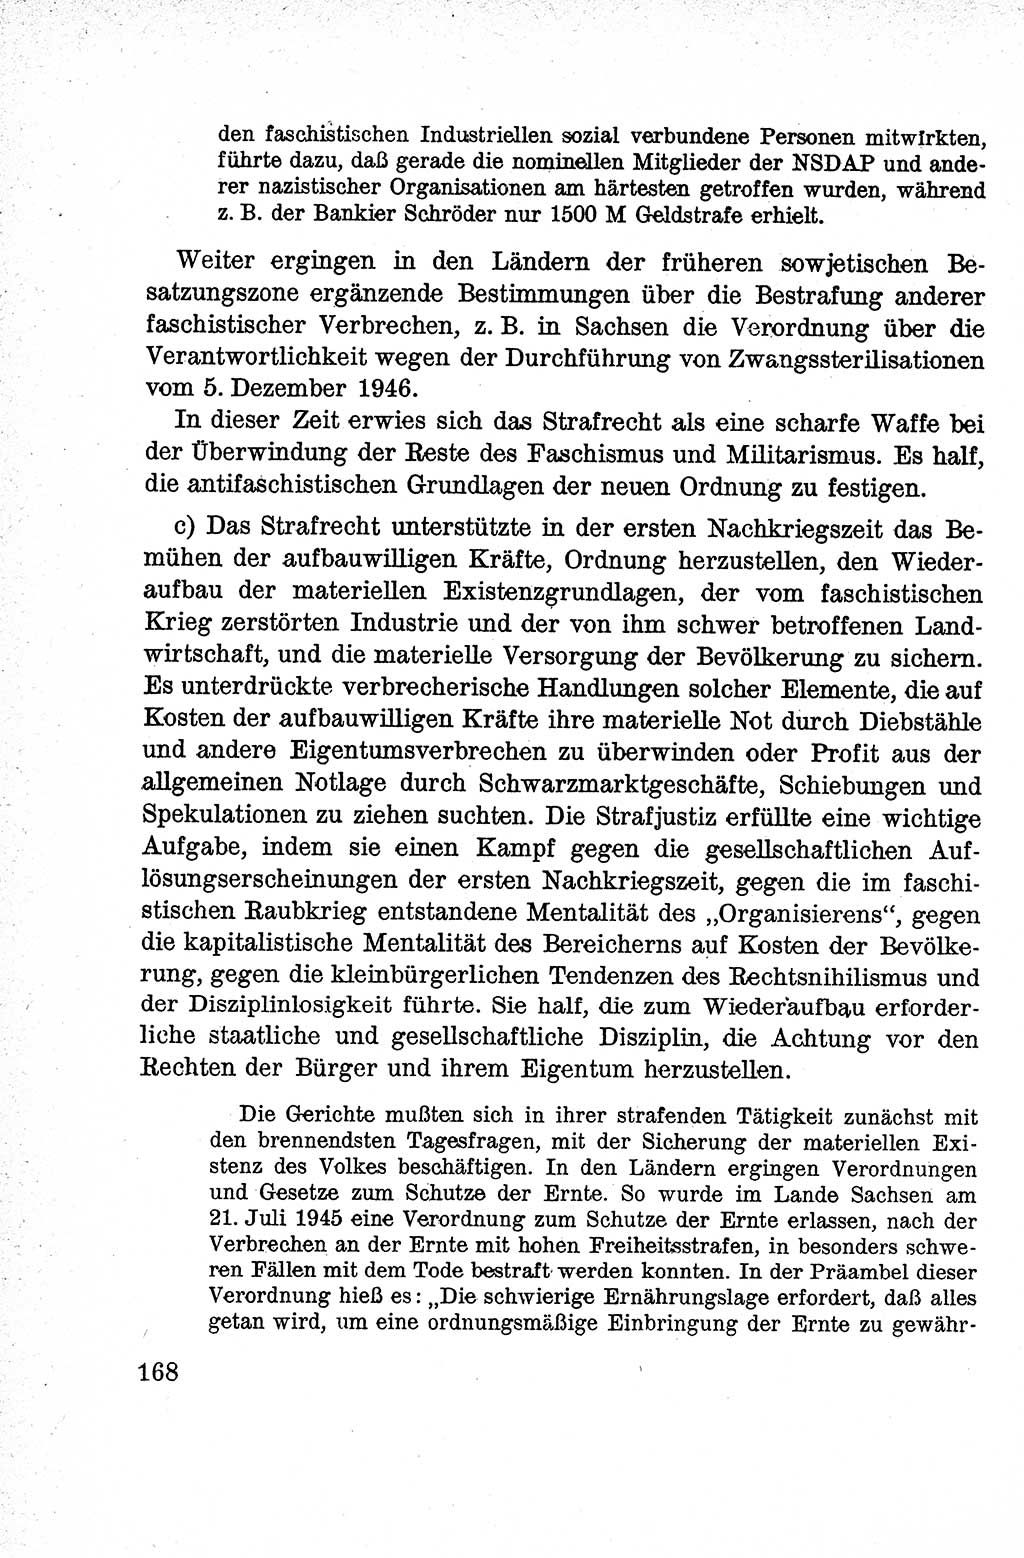 Lehrbuch des Strafrechts der Deutschen Demokratischen Republik (DDR), Allgemeiner Teil 1959, Seite 168 (Lb. Strafr. DDR AT 1959, S. 168)